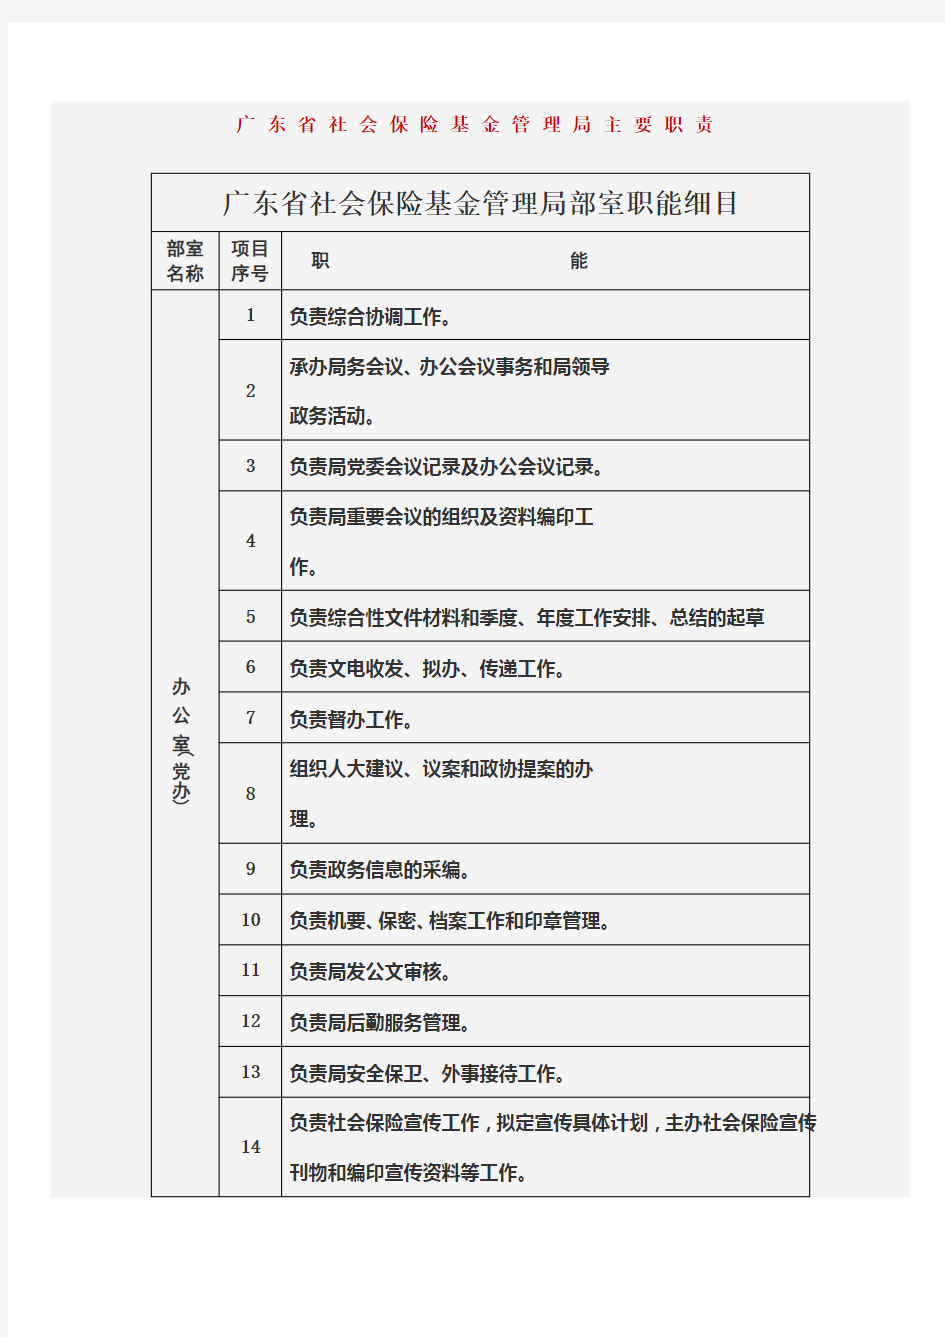 广东省社会保险基金管理局主要职责